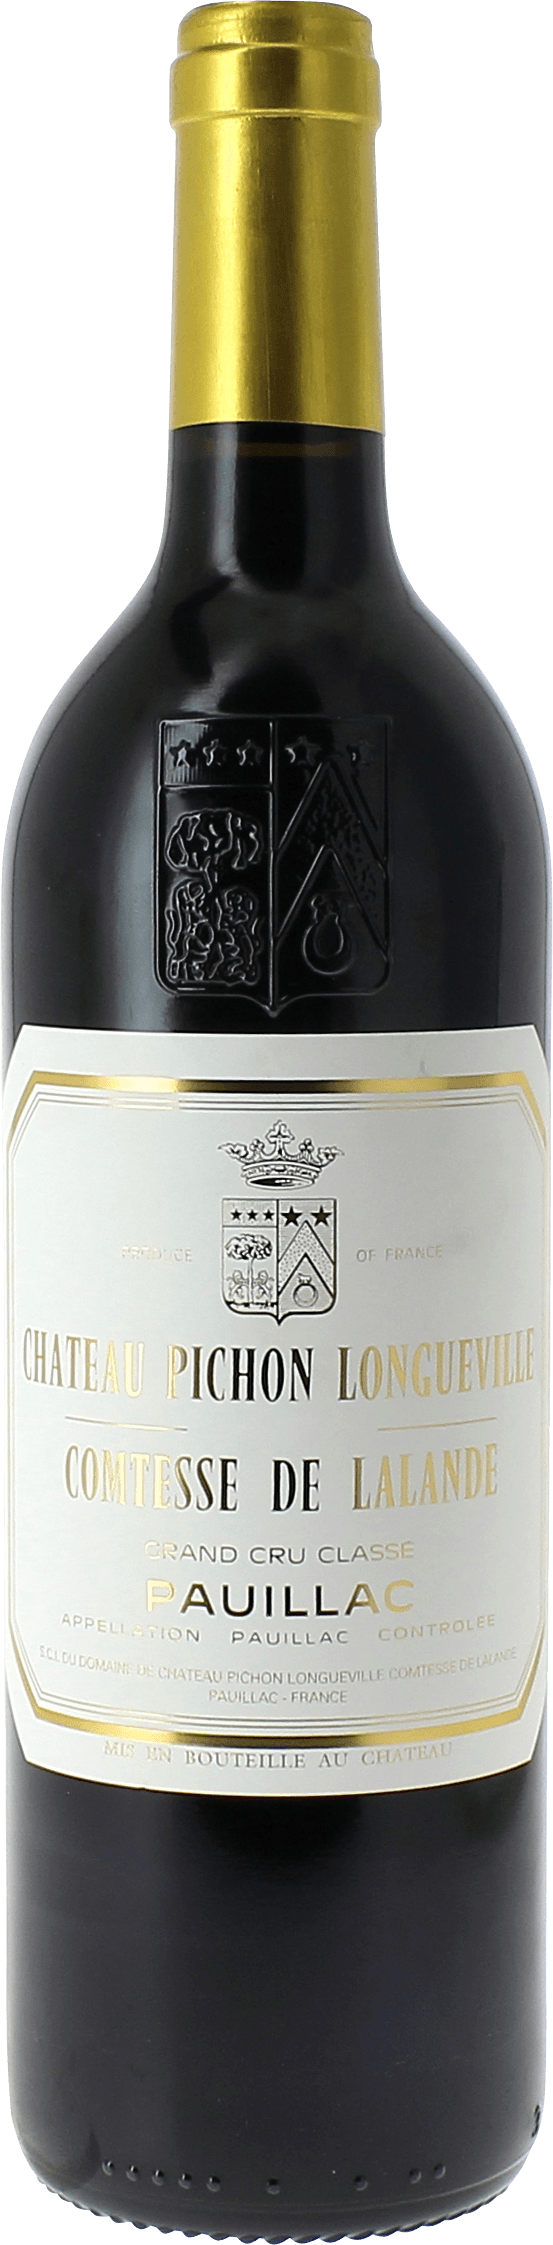 Pichon comtesse de lalande 2000 2me Grand cru class Pauillac, Bordeaux rouge